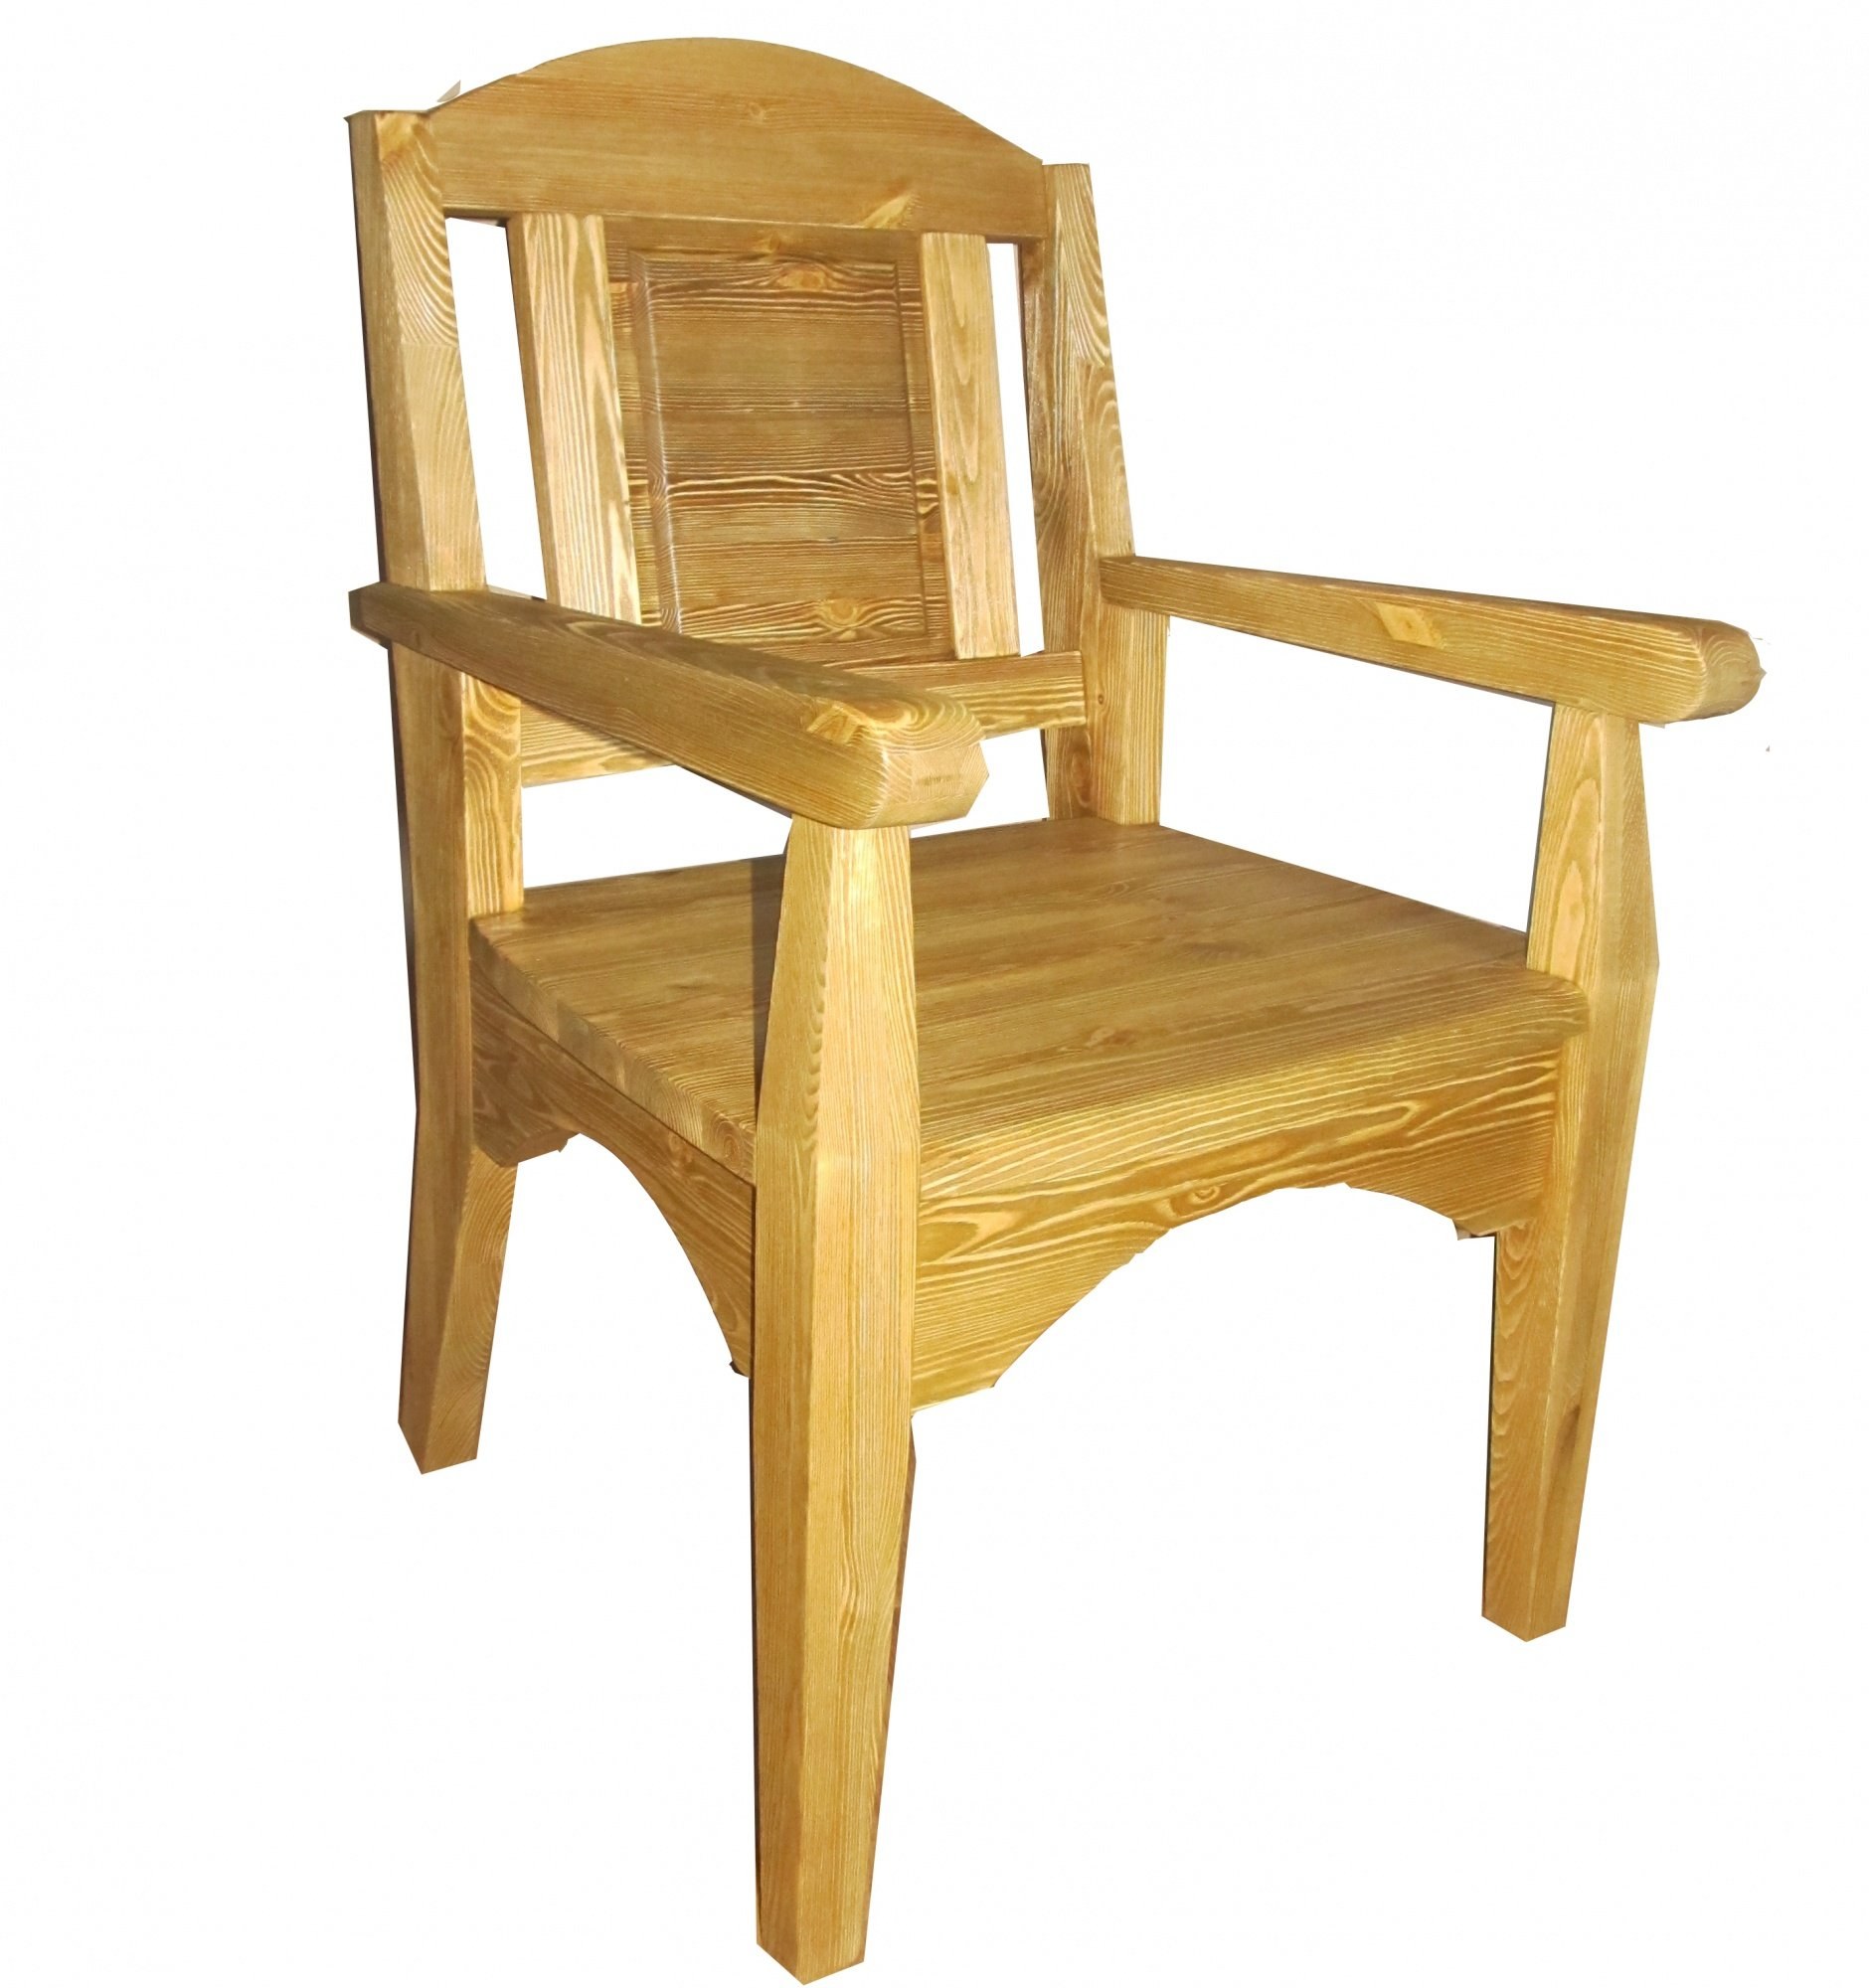 Wooden chair. Стул с подлокотниками из дерева. Кресло из дерева с подлокотниками. Стул кресло из дерева. Стул деревянный со спинкой и подлокотниками.